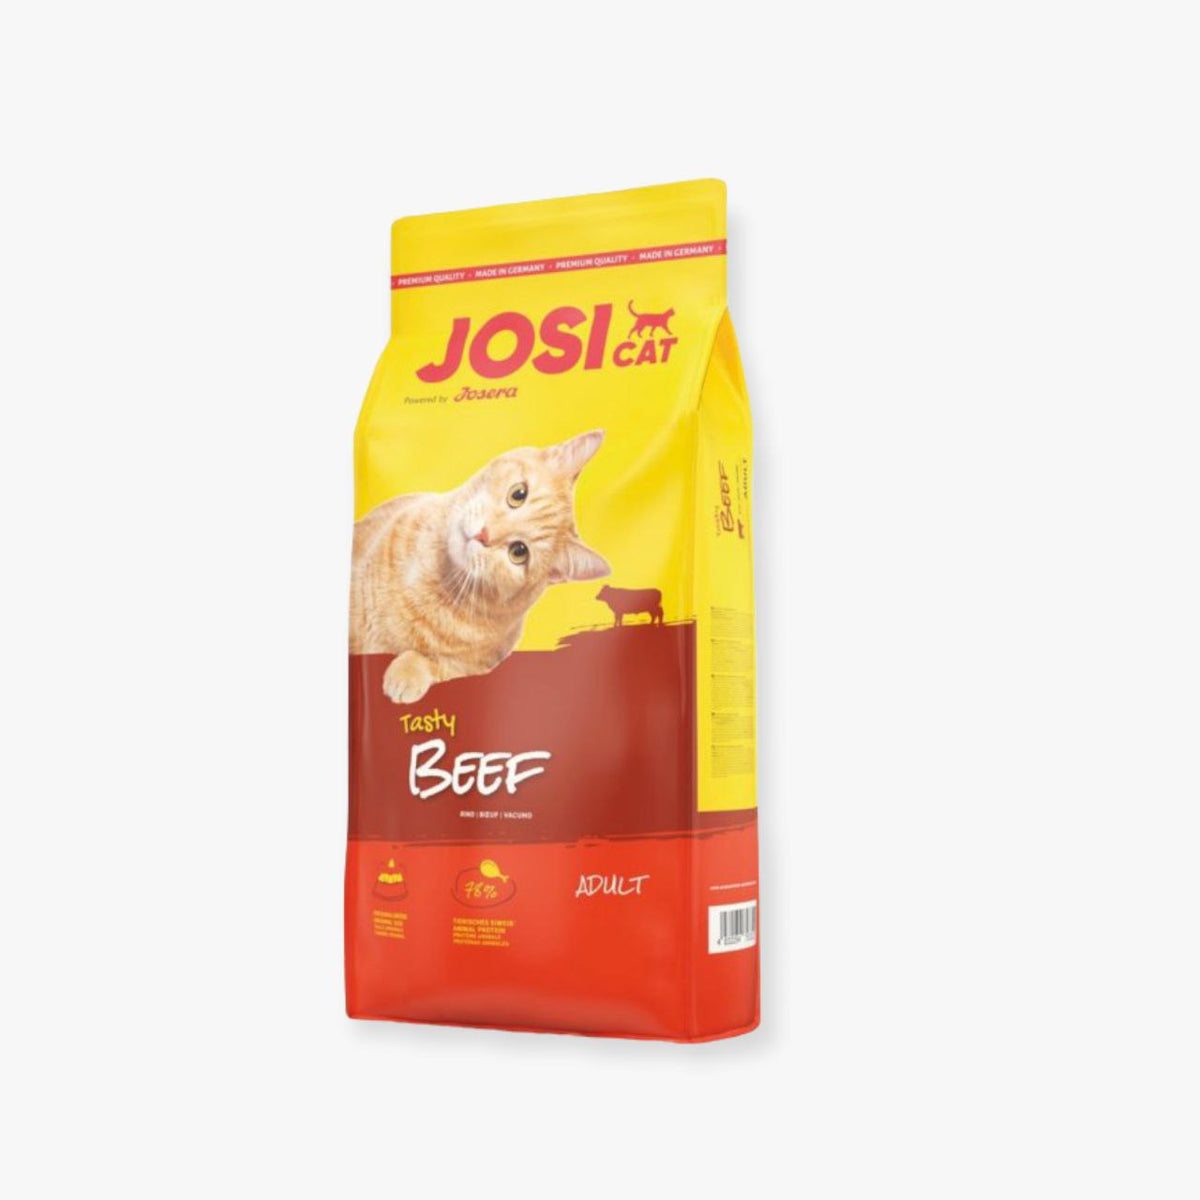 جوسي كات طعام جاف للقطط البالغة باللحم البقري 650 غ